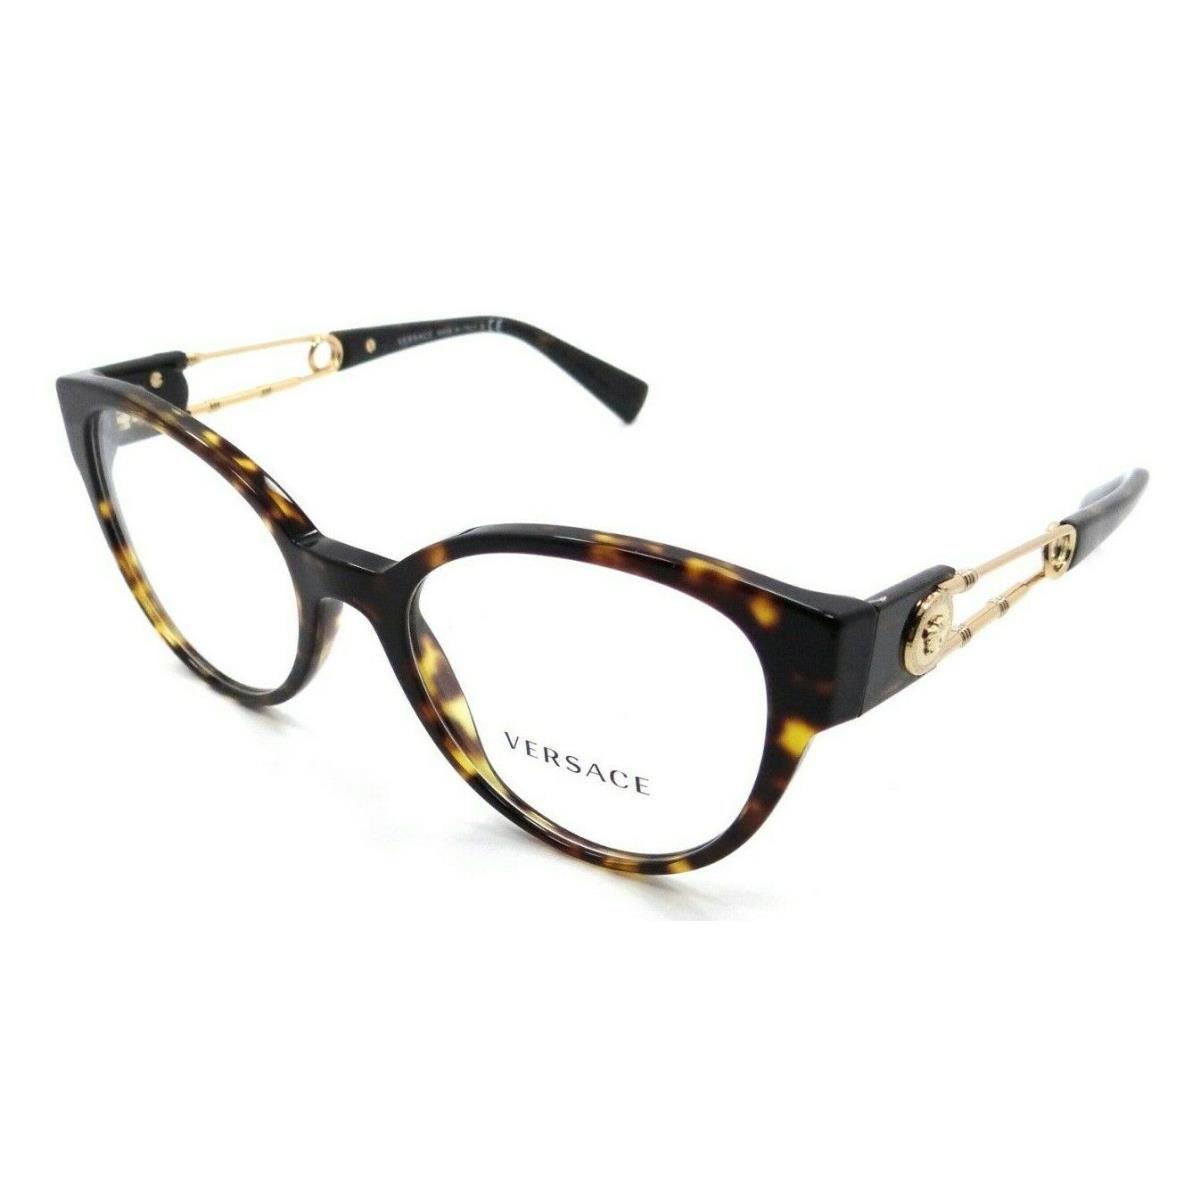 Versace Eyeglasses Frames VE 3307 108 52-19-140 Dark Havana Made in Italy